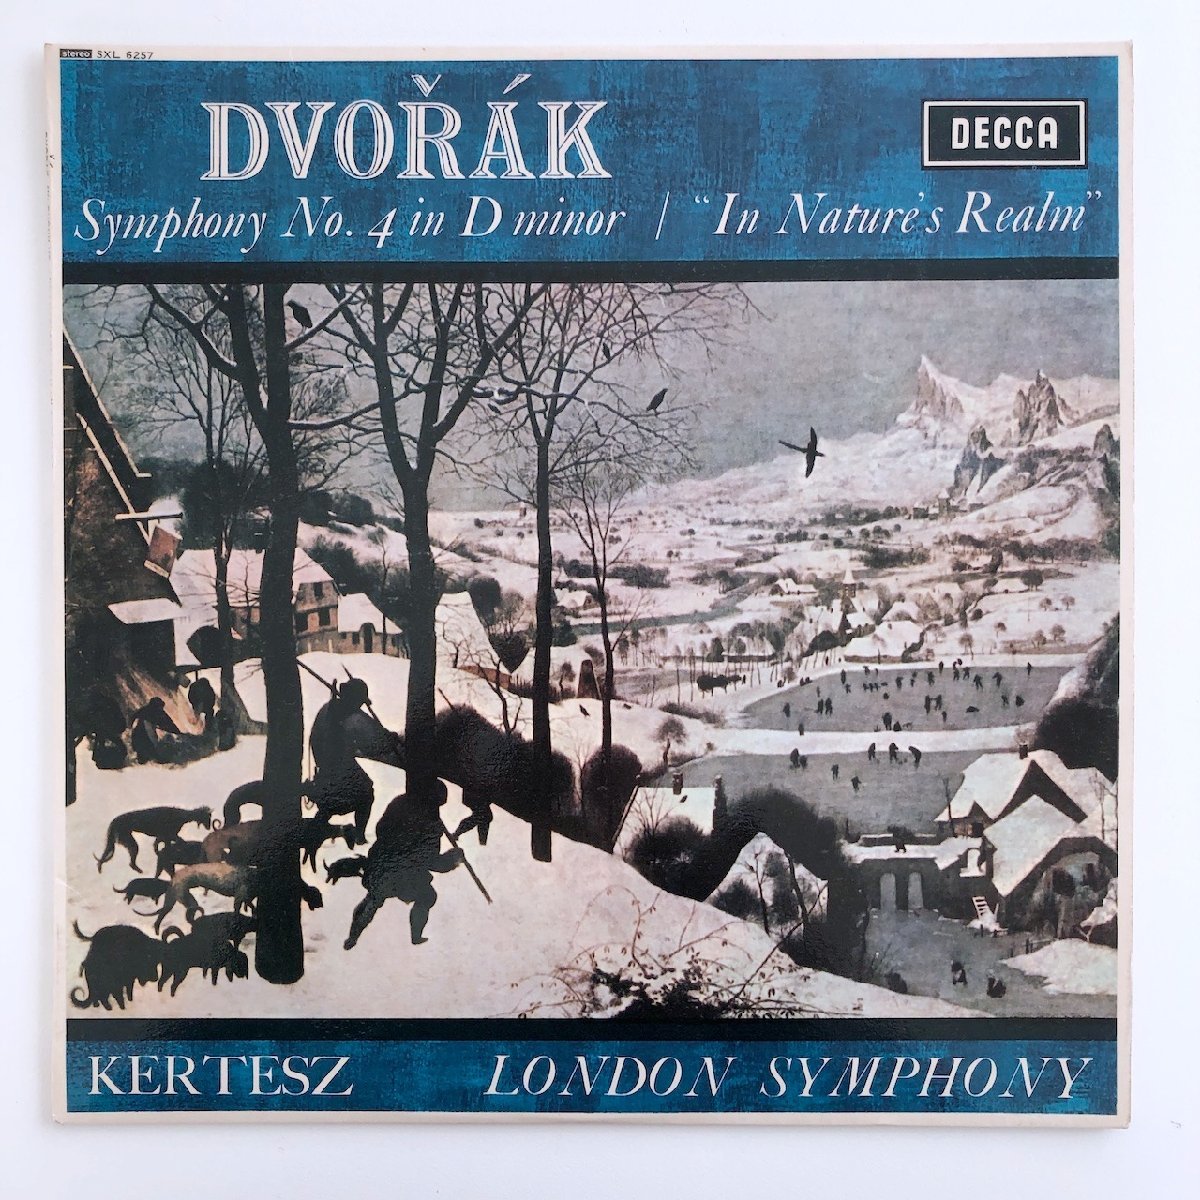 LP/kerutes, London реверберация приятный ./dovoru The -k: симфония no. 4 номер / UK запись оригинал ED2 DECCA SXL6257 31203